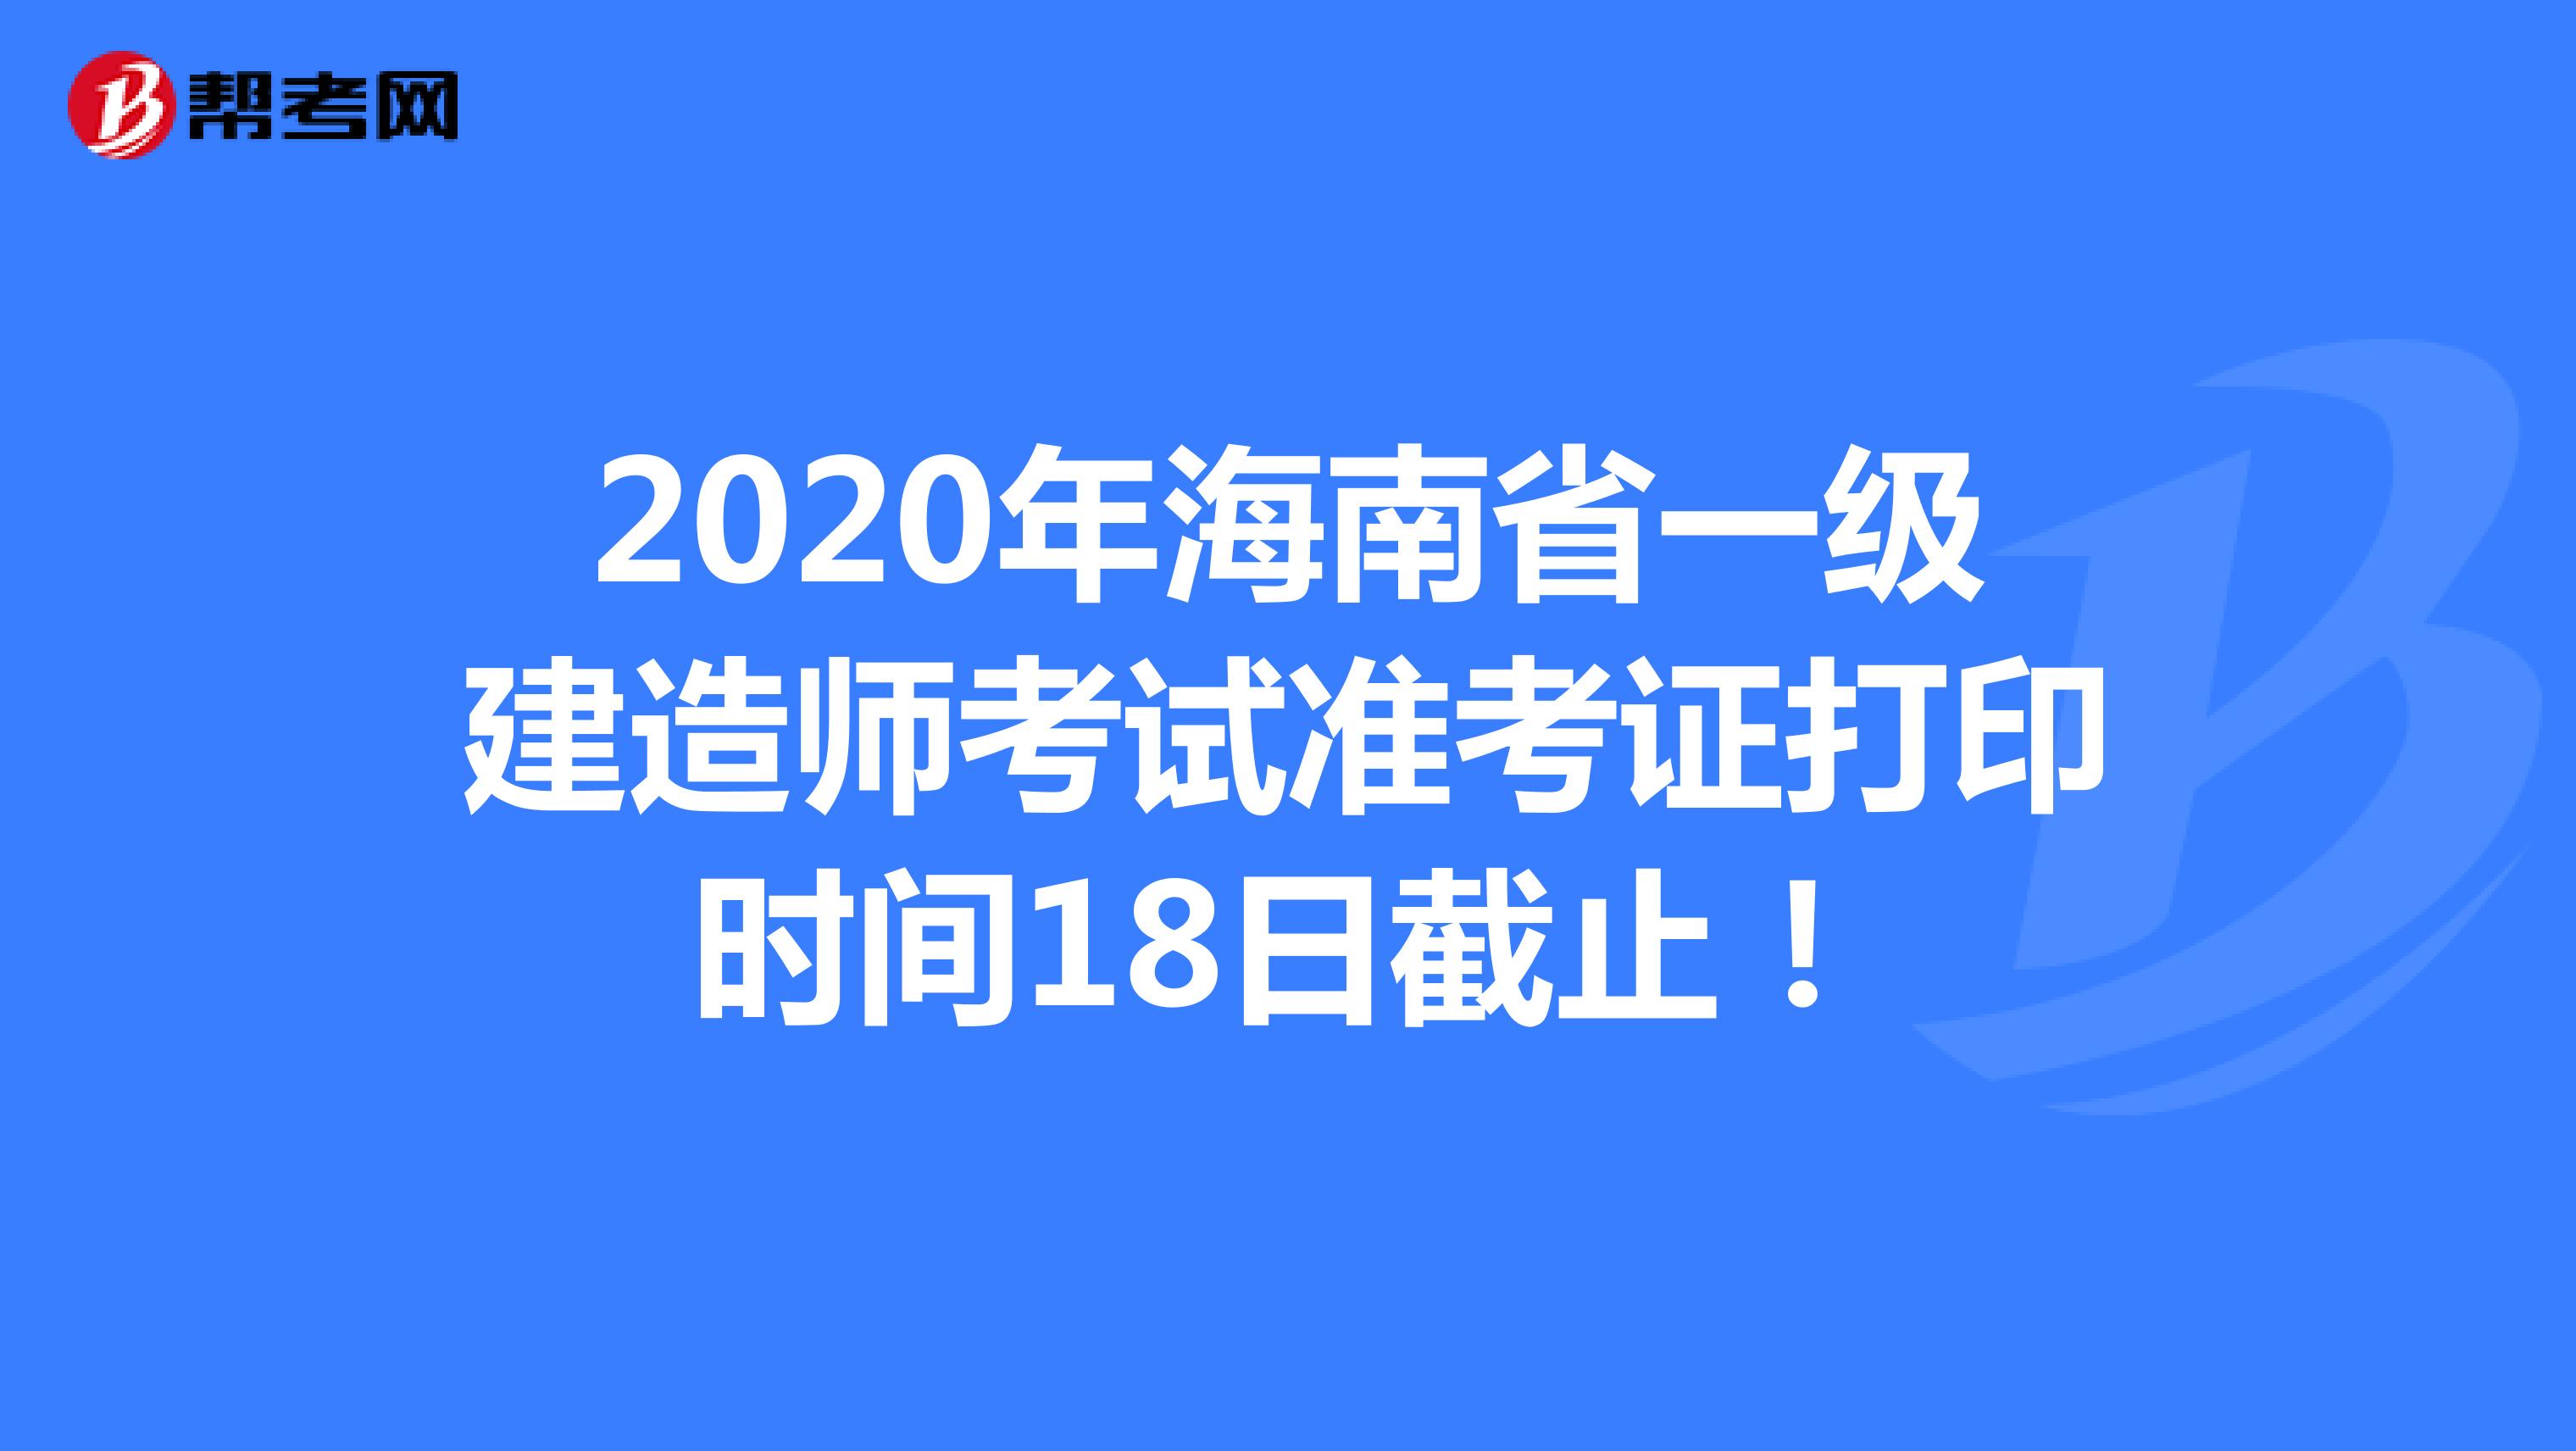 2020年海南省一级建造师考试准考证打印时间18日截止！